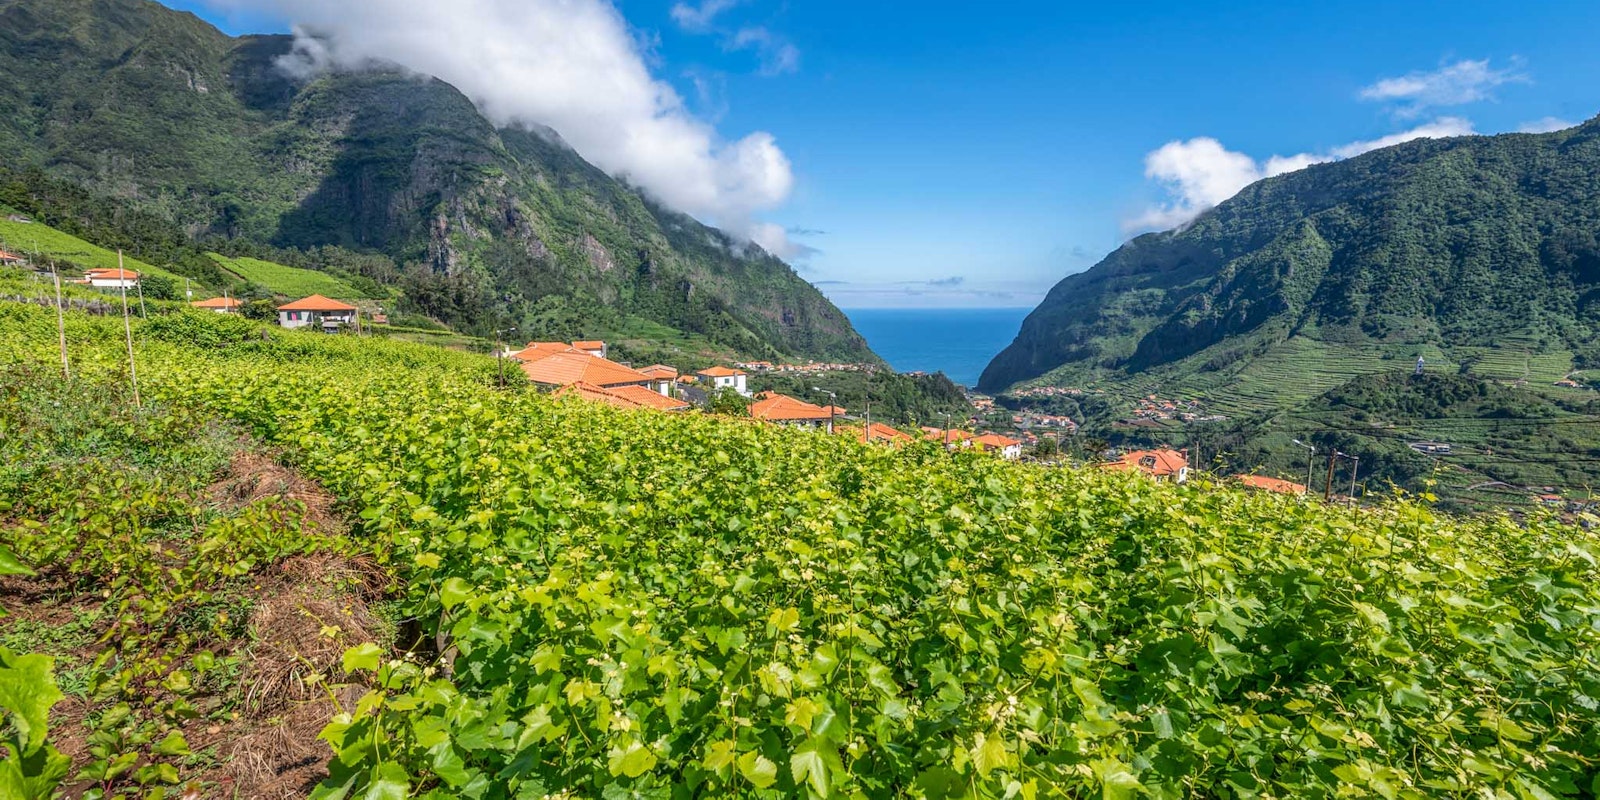 São Vicente vineyards